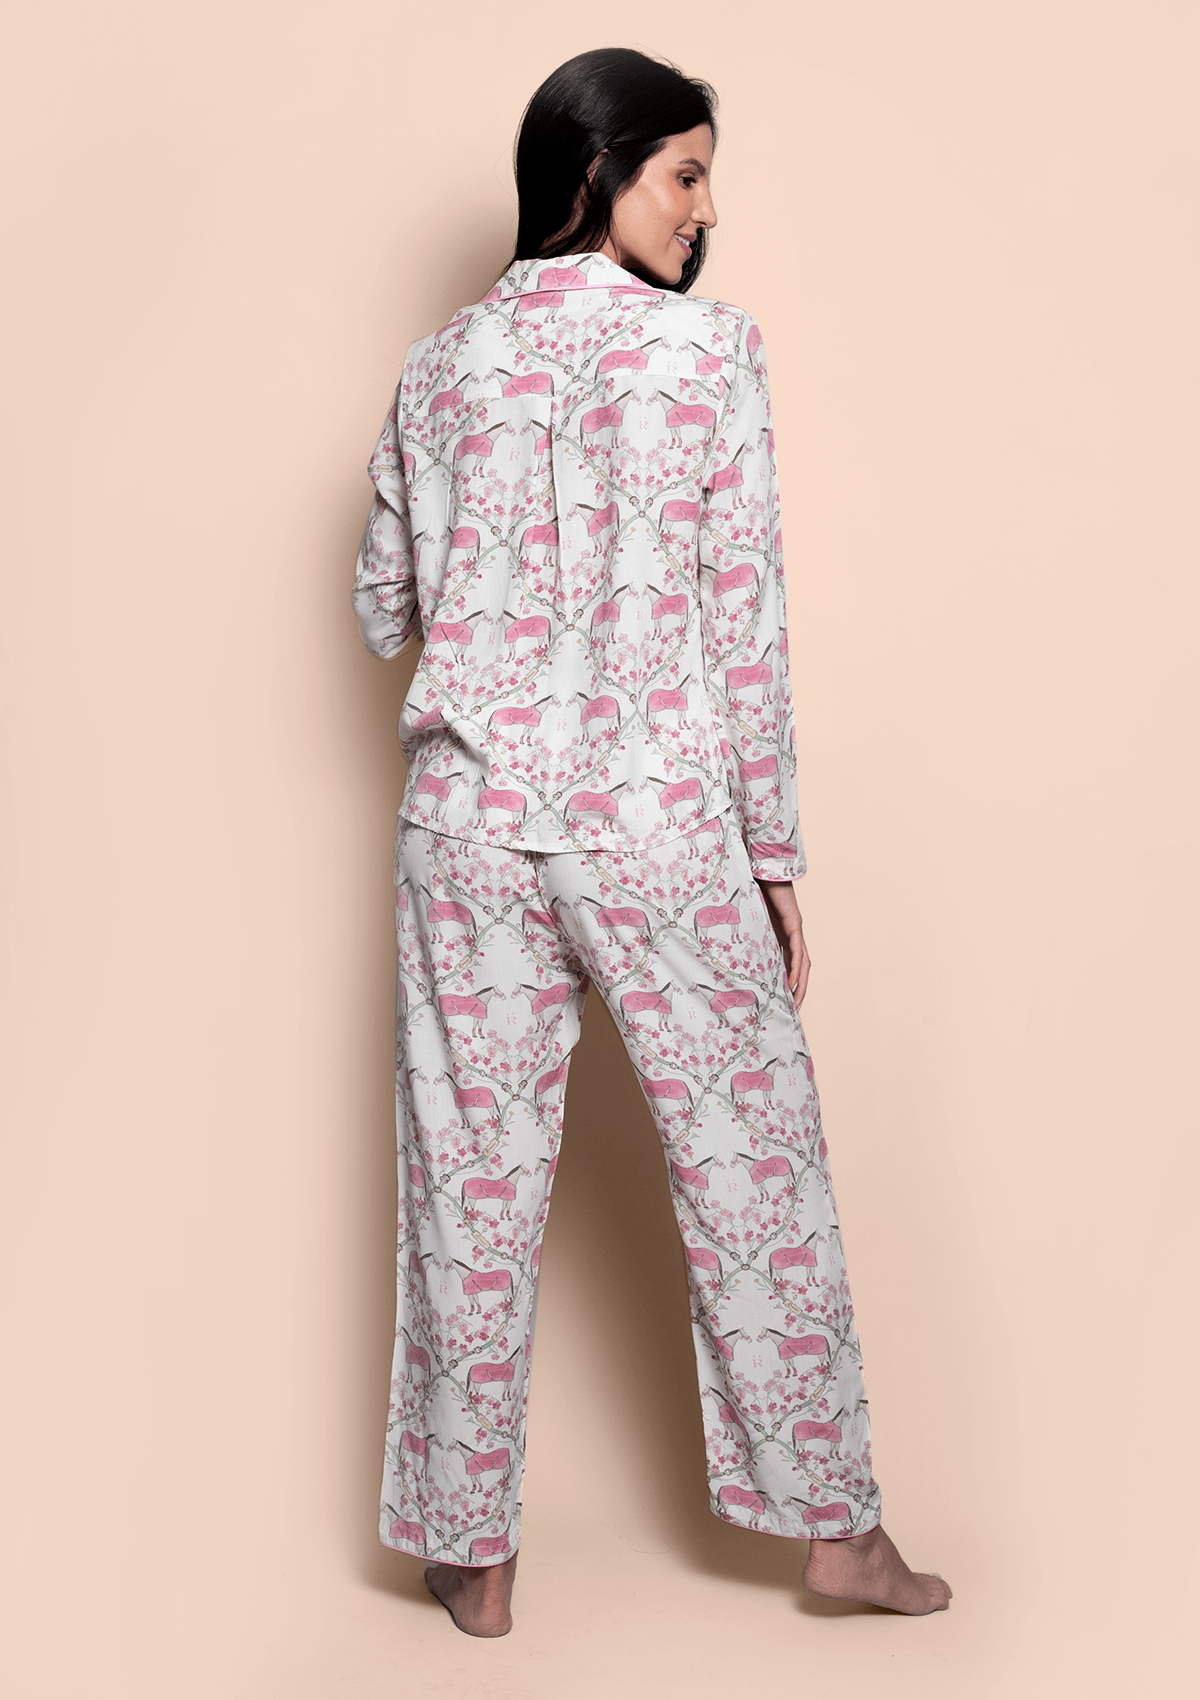 Hoofbeat Dreams PJ’s Set | Pink | Equestrian Sleepwear Collection - Rönner